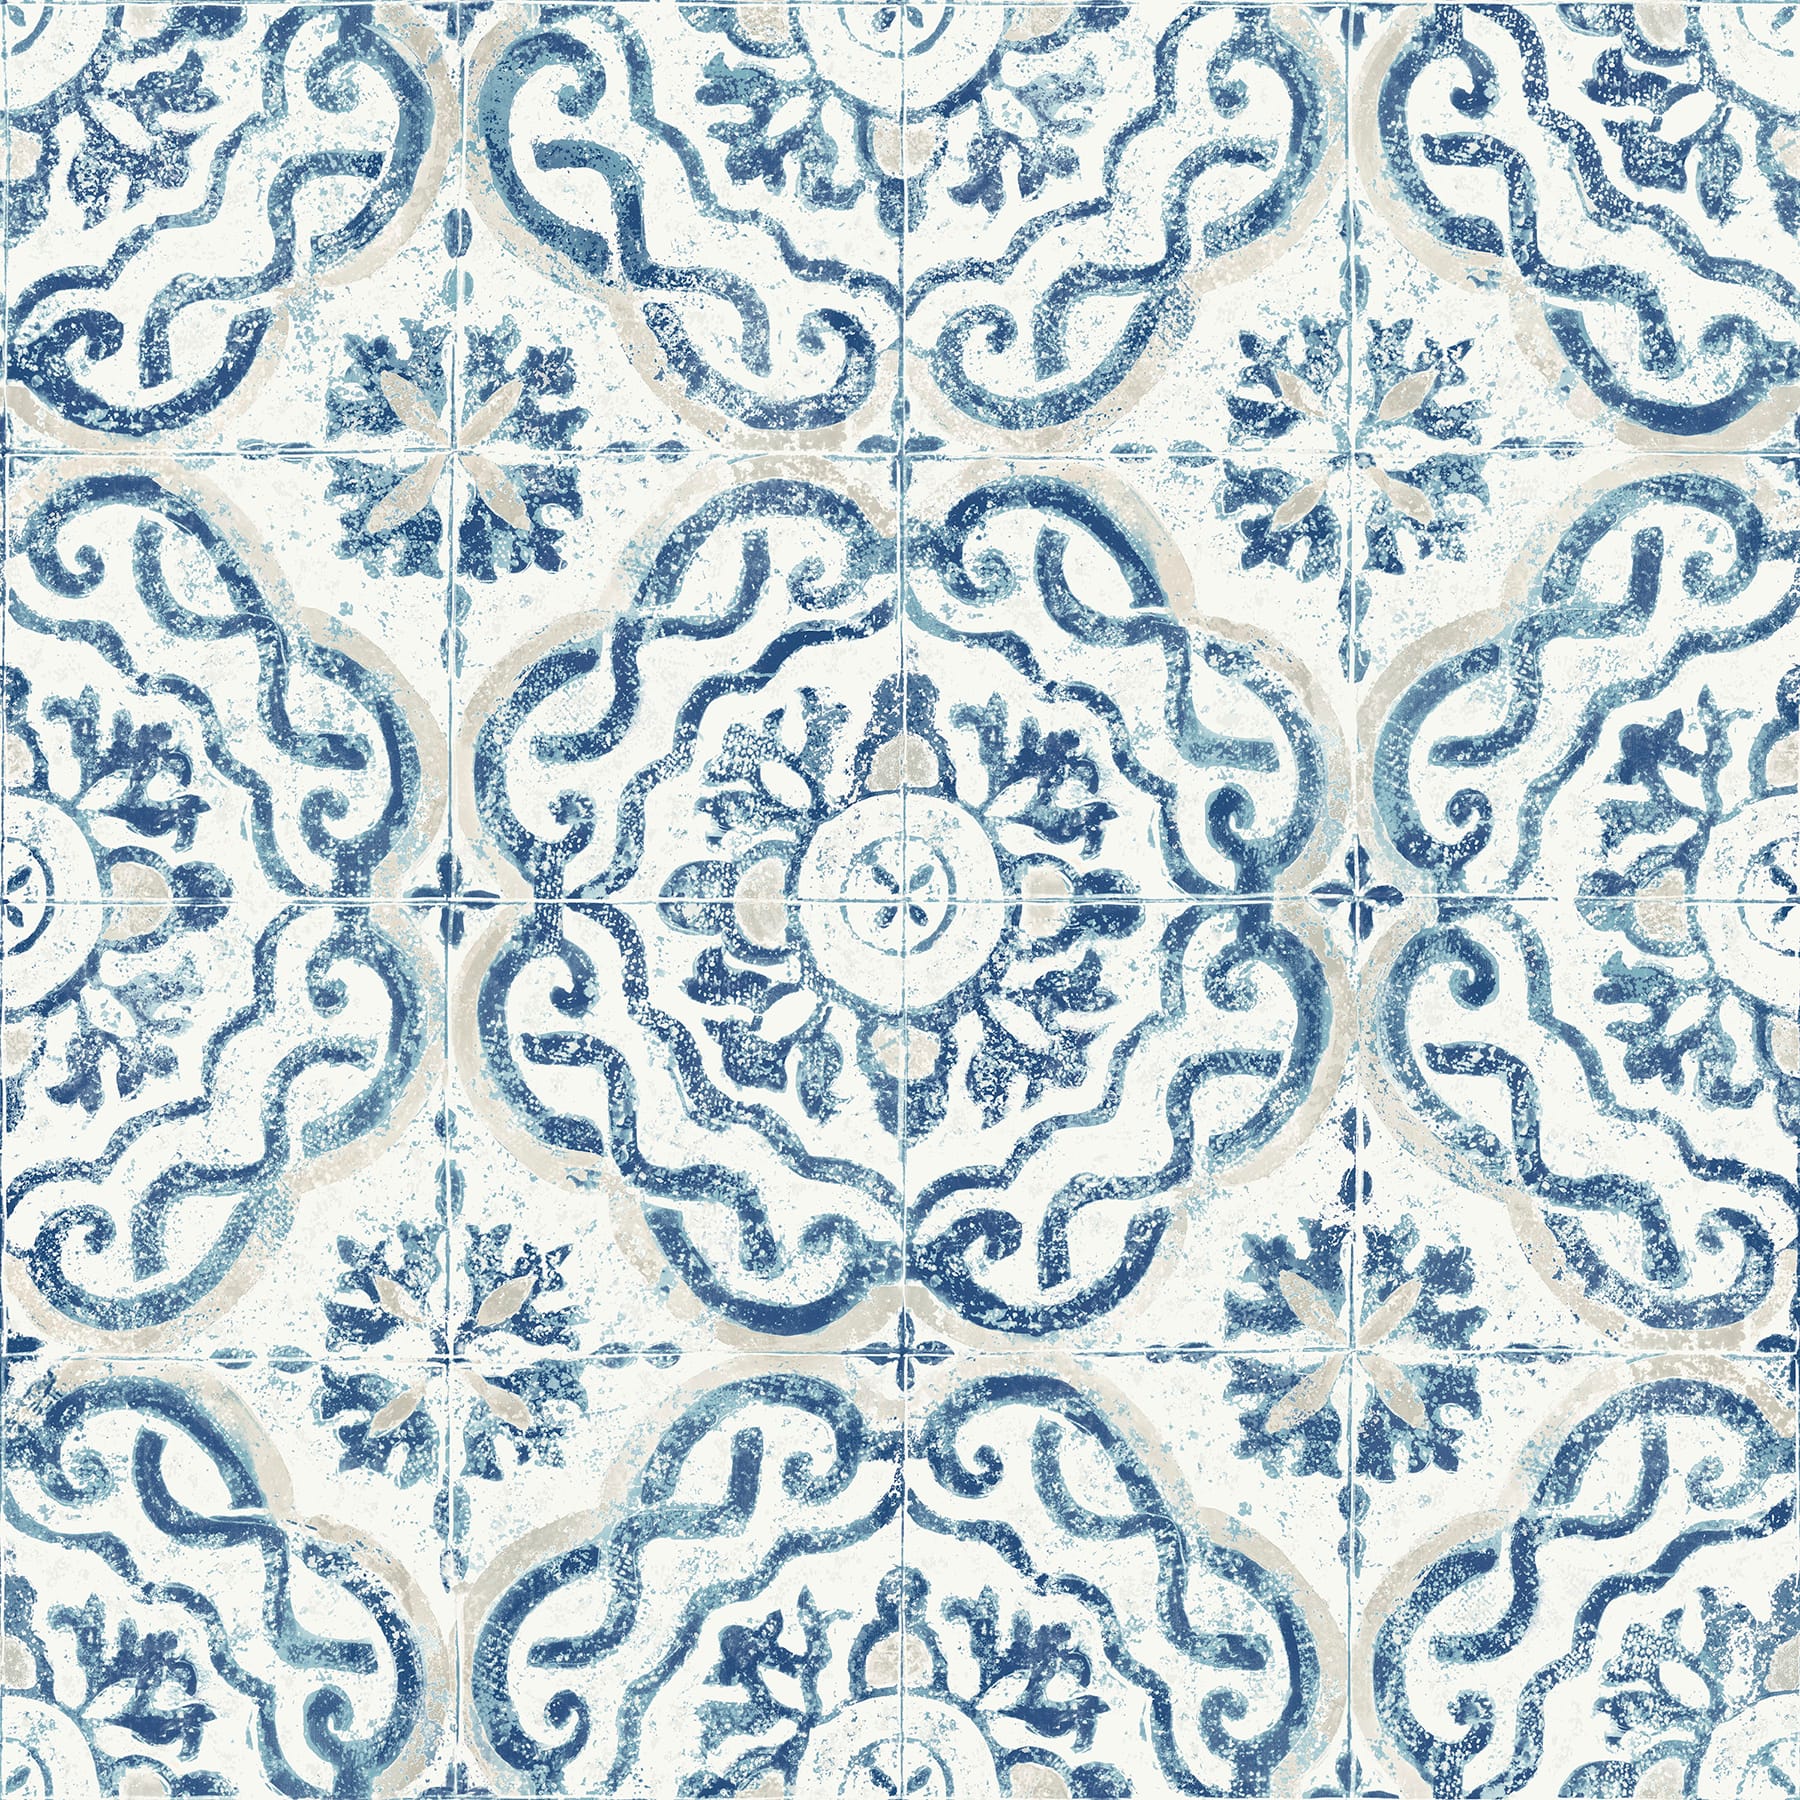 Buy Spanish Tile Wallpaper Sevilla Spanish Tiles Blue by Online in India   Etsy